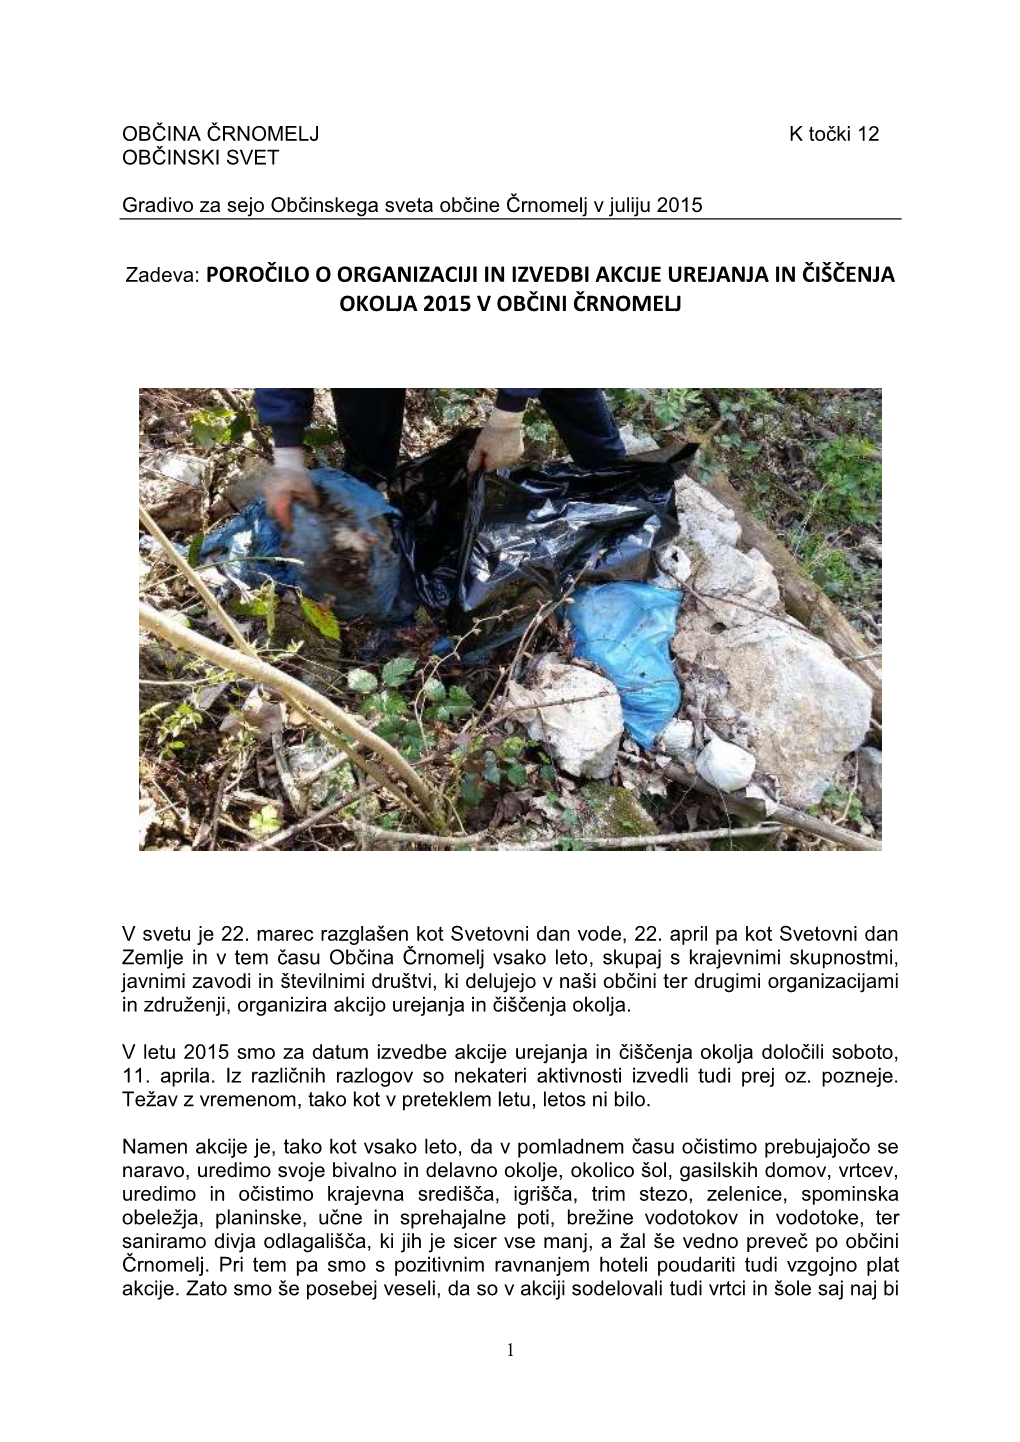 Poročilo O Organizaciji in Izvedbi Akcije Urejanja in Čiščenja Okolja 2015 V Občini Črnomelj